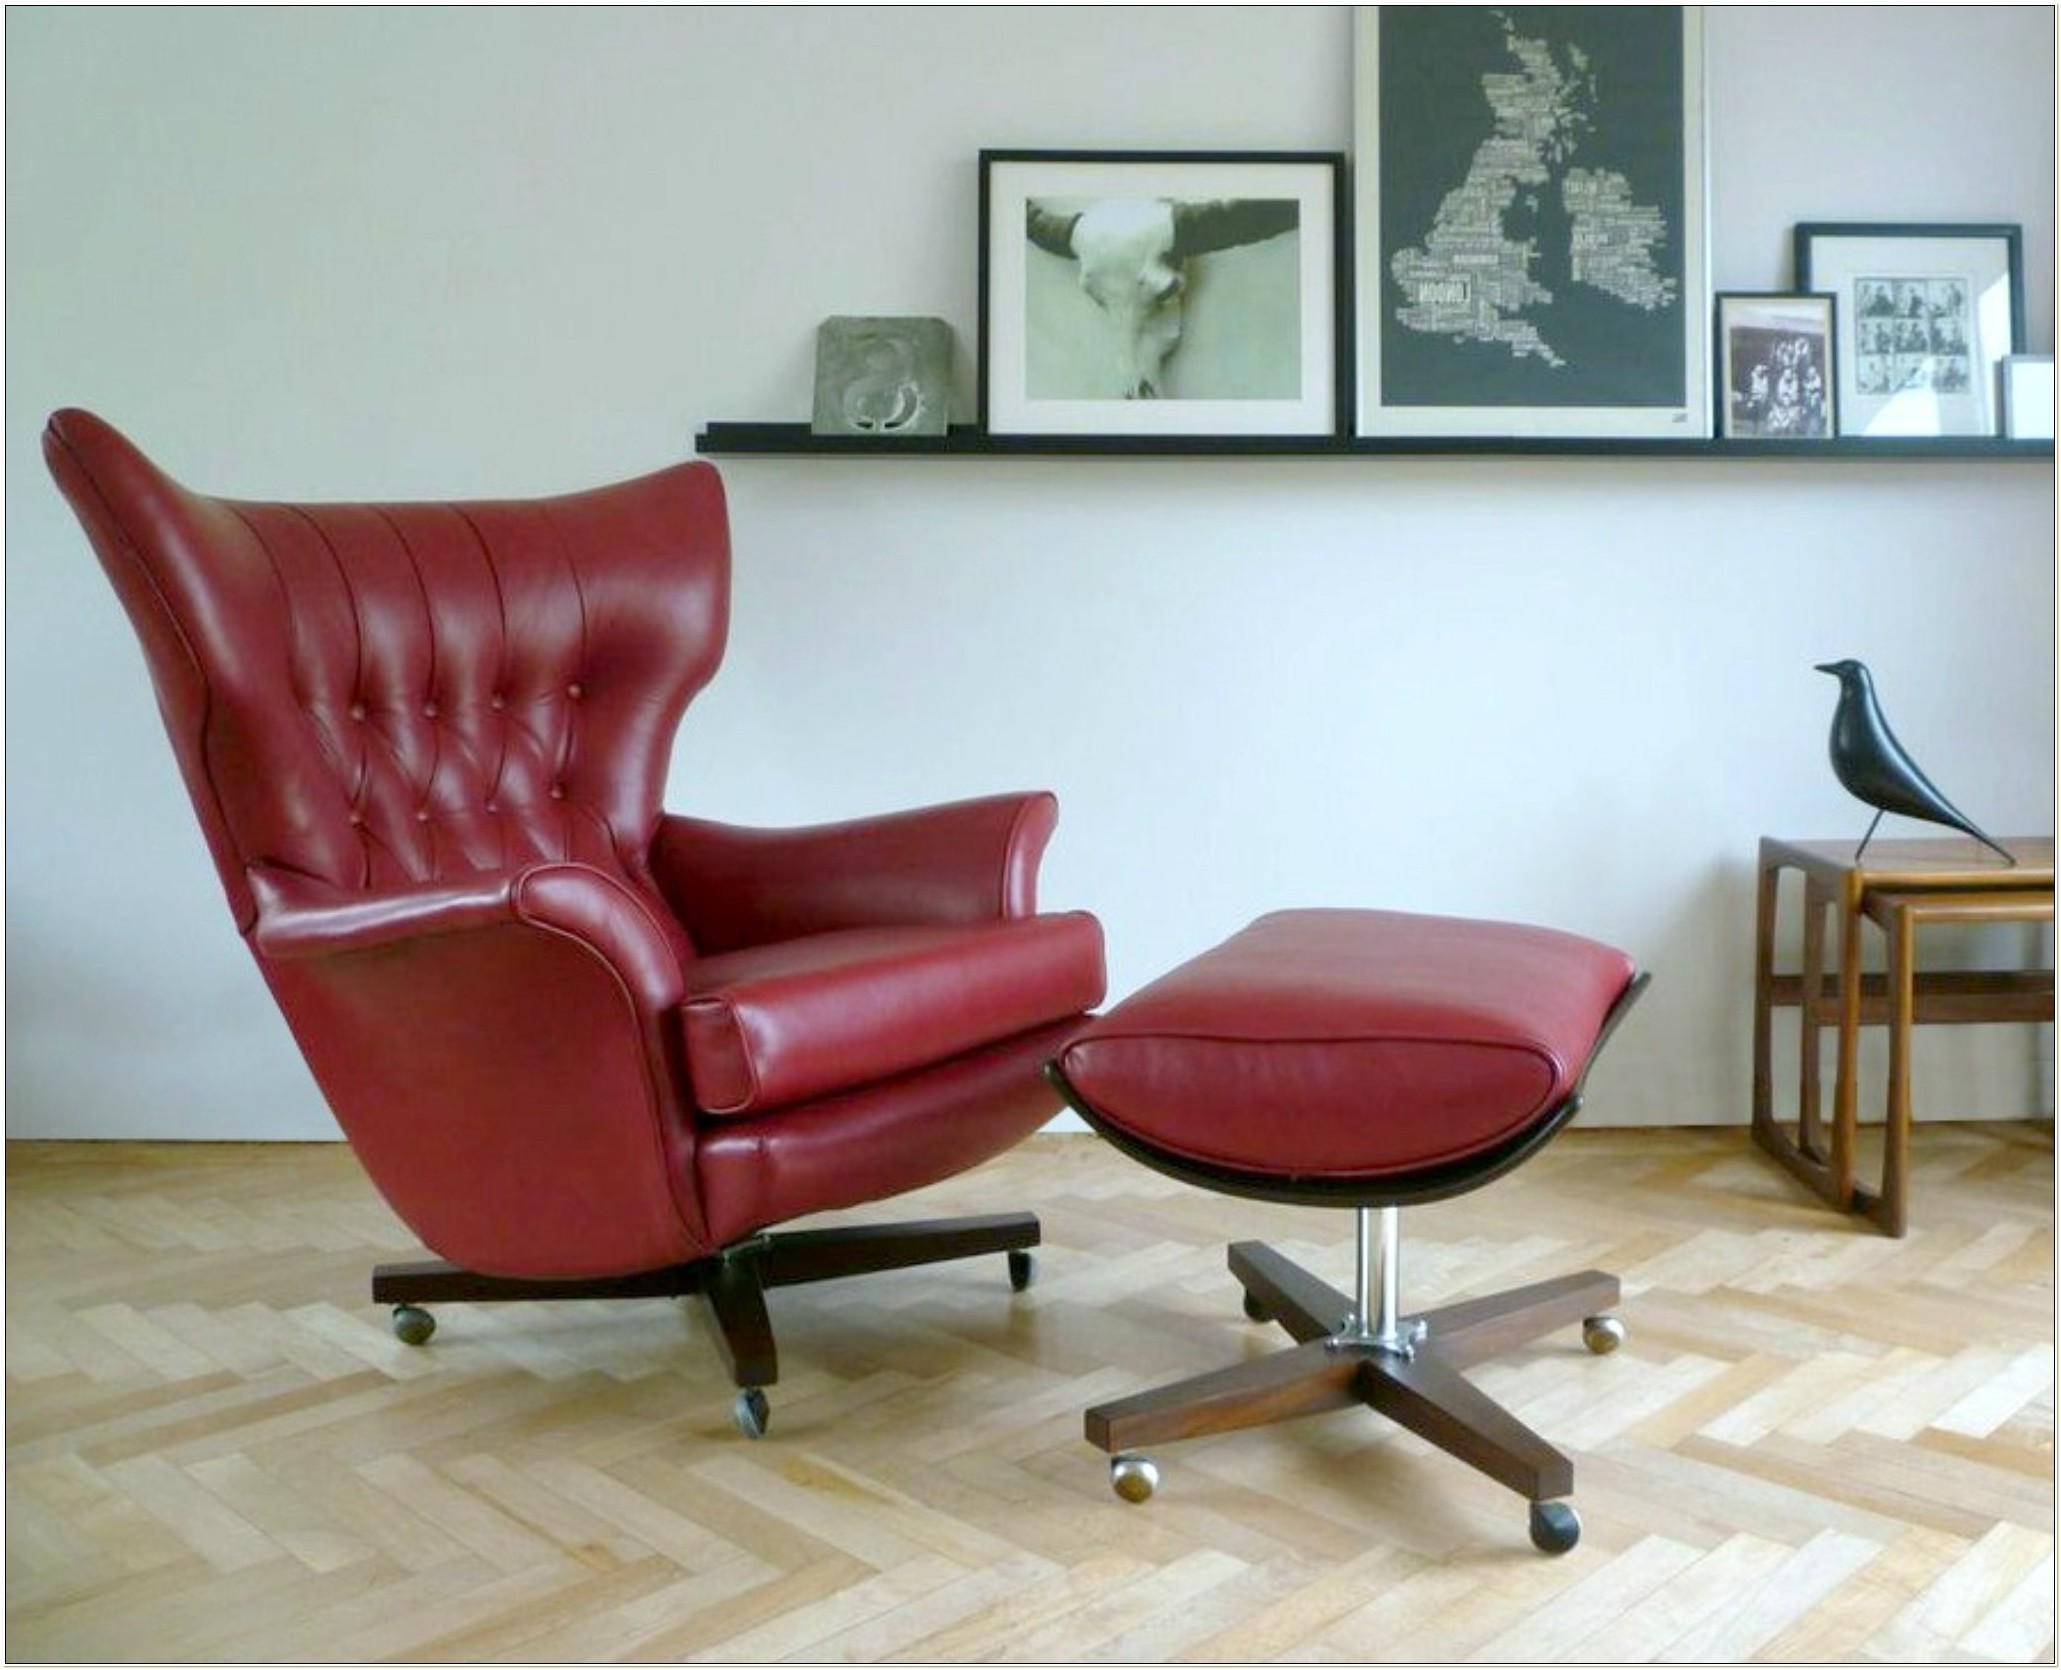 ergonomic living room furniture canada